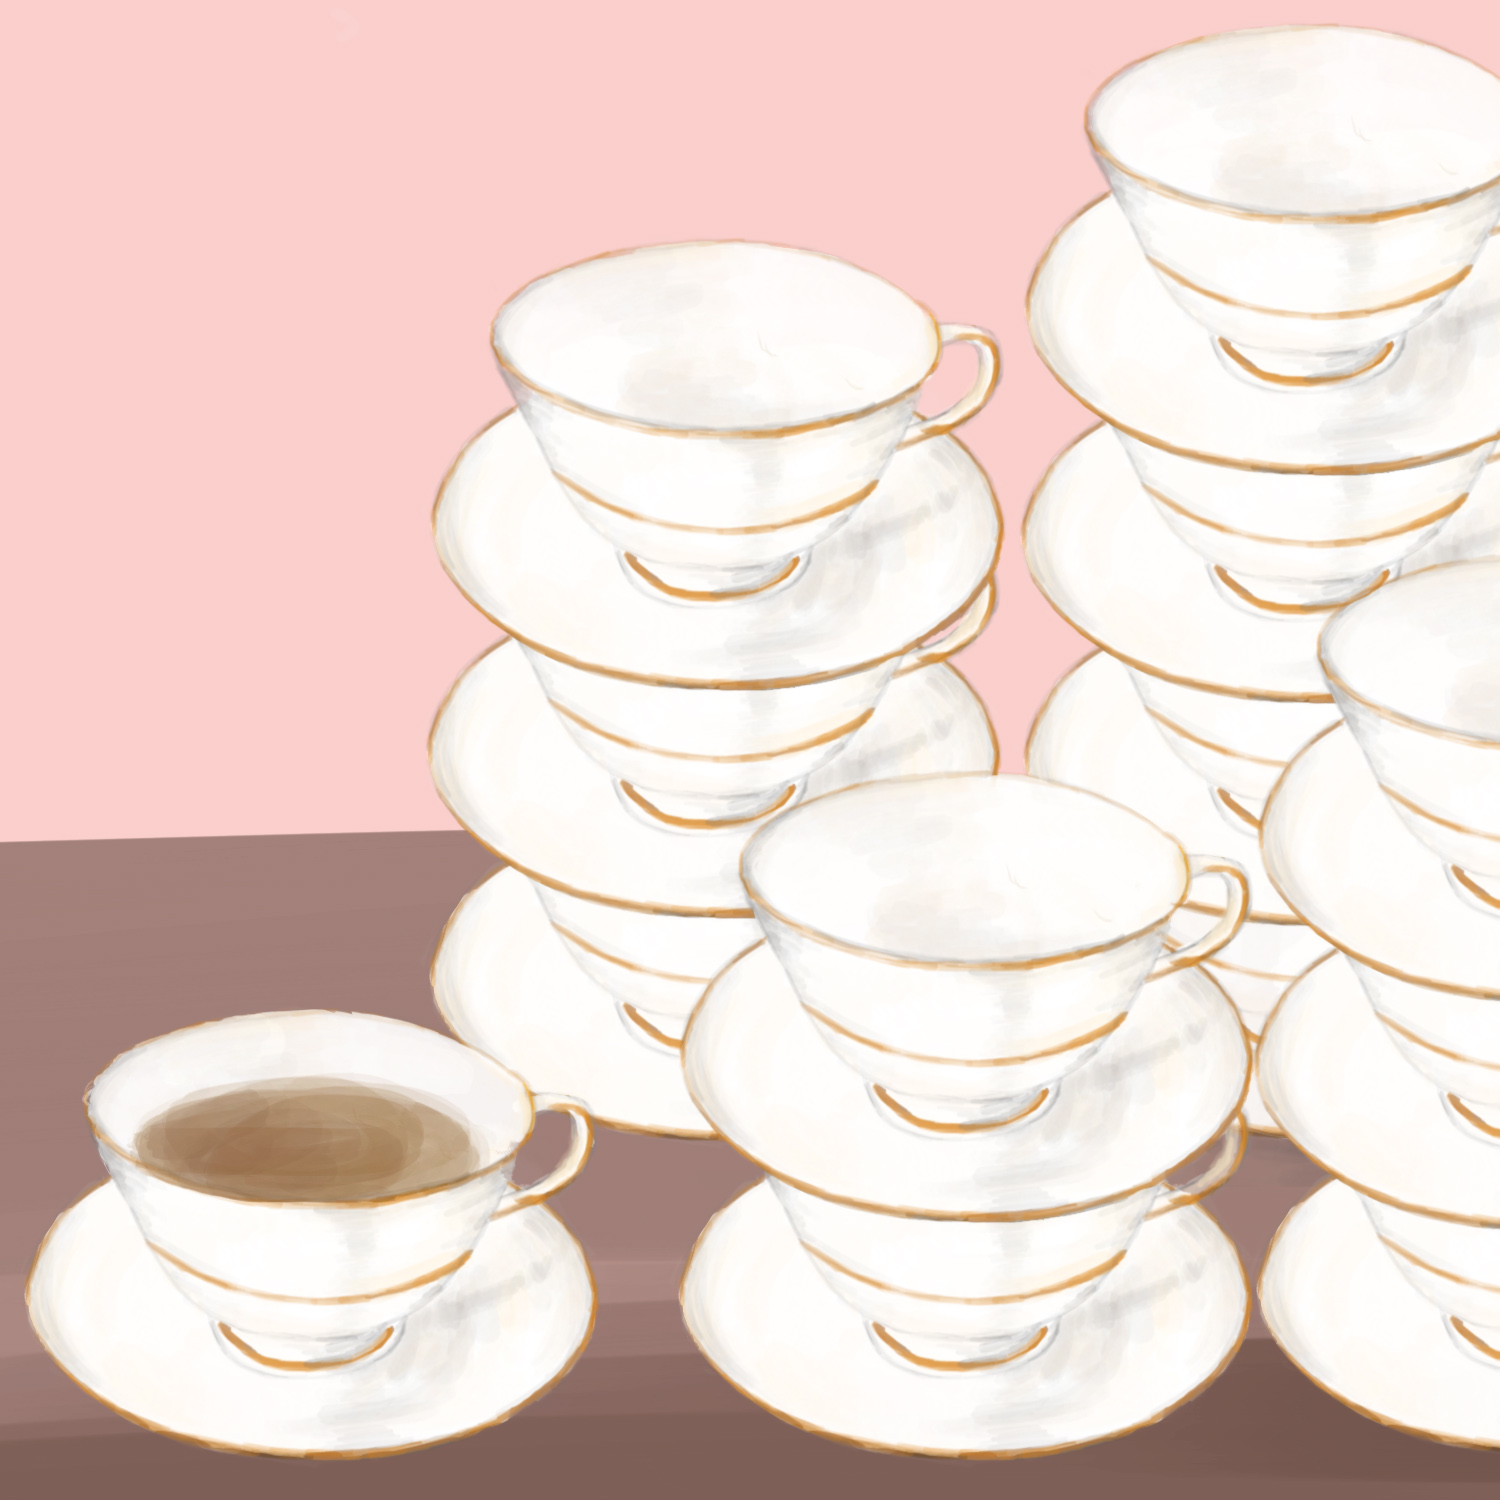 A teacup full of tea near stacks of identical teacups